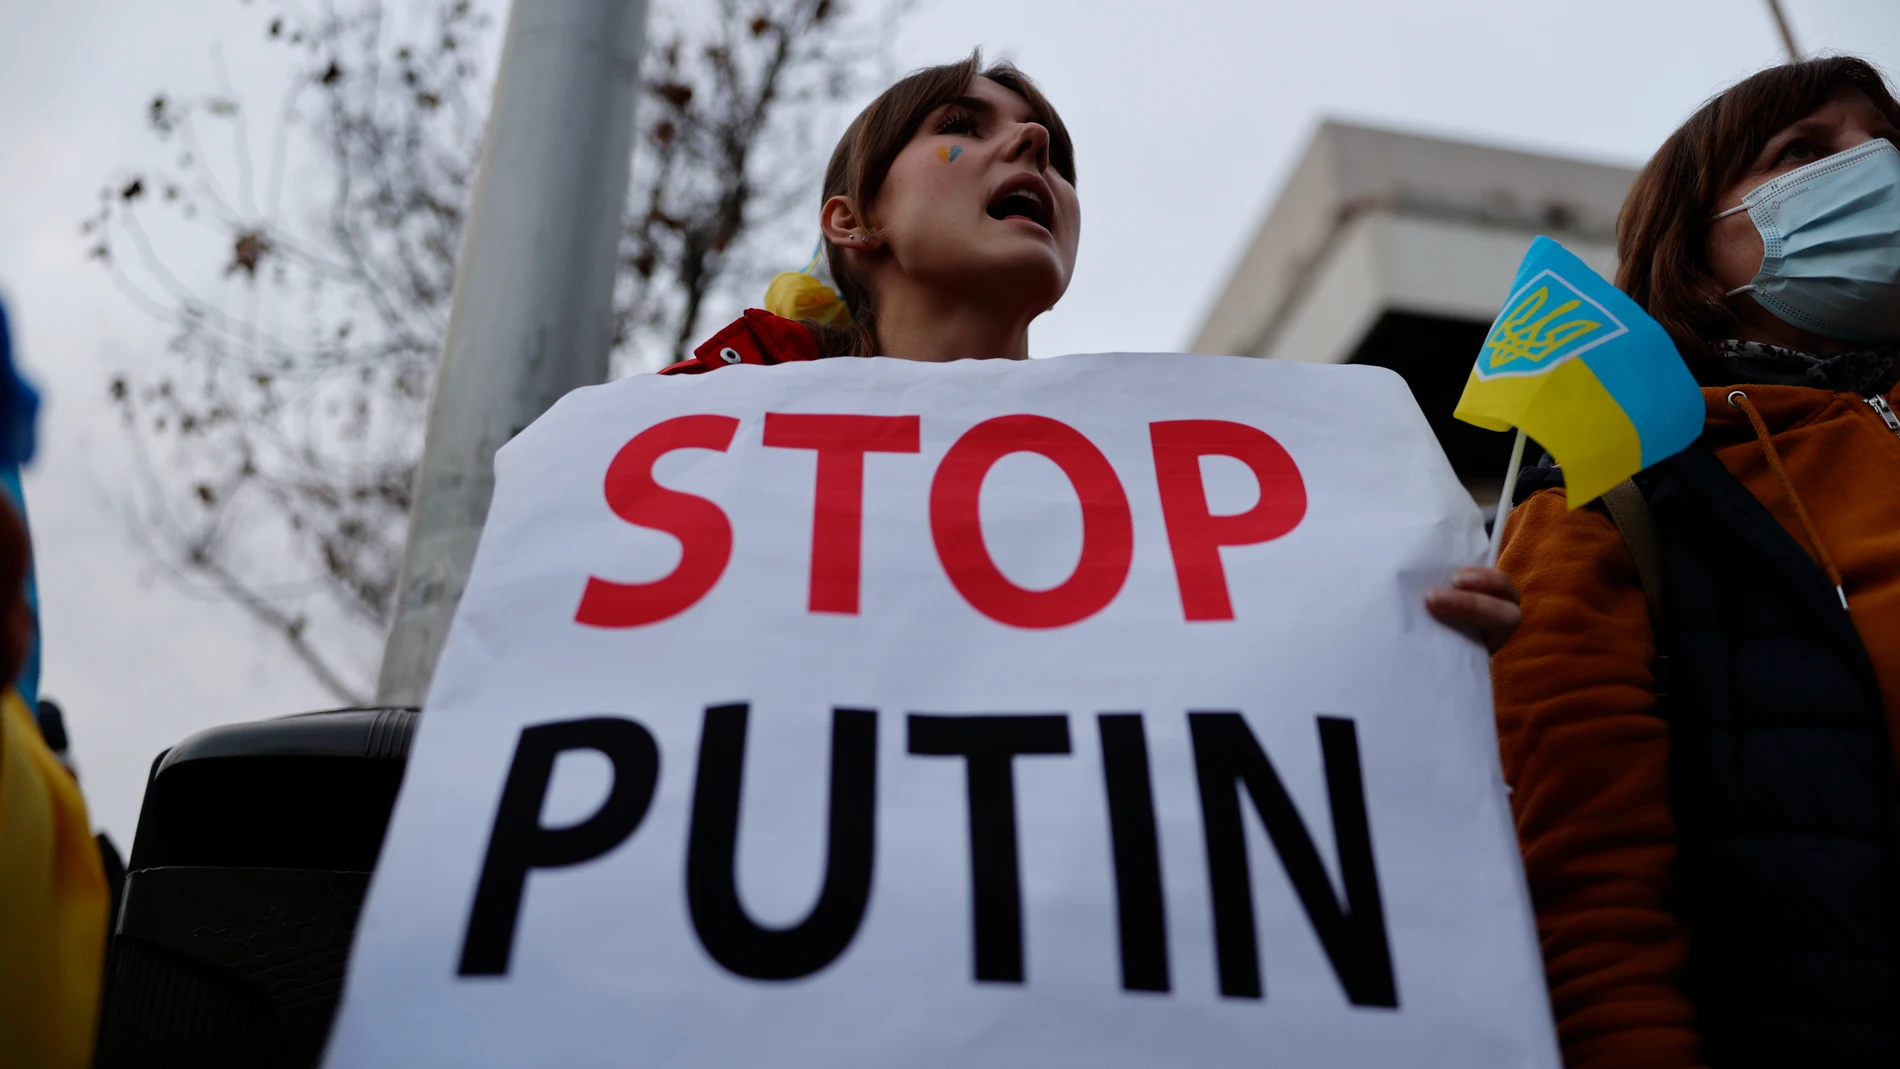 Protesta llevada a cabo en la tarde de este jueves a las puertas de la embajada de Rusia en España, sita en Madrid, tras la operación militar rusa en Ucrania.